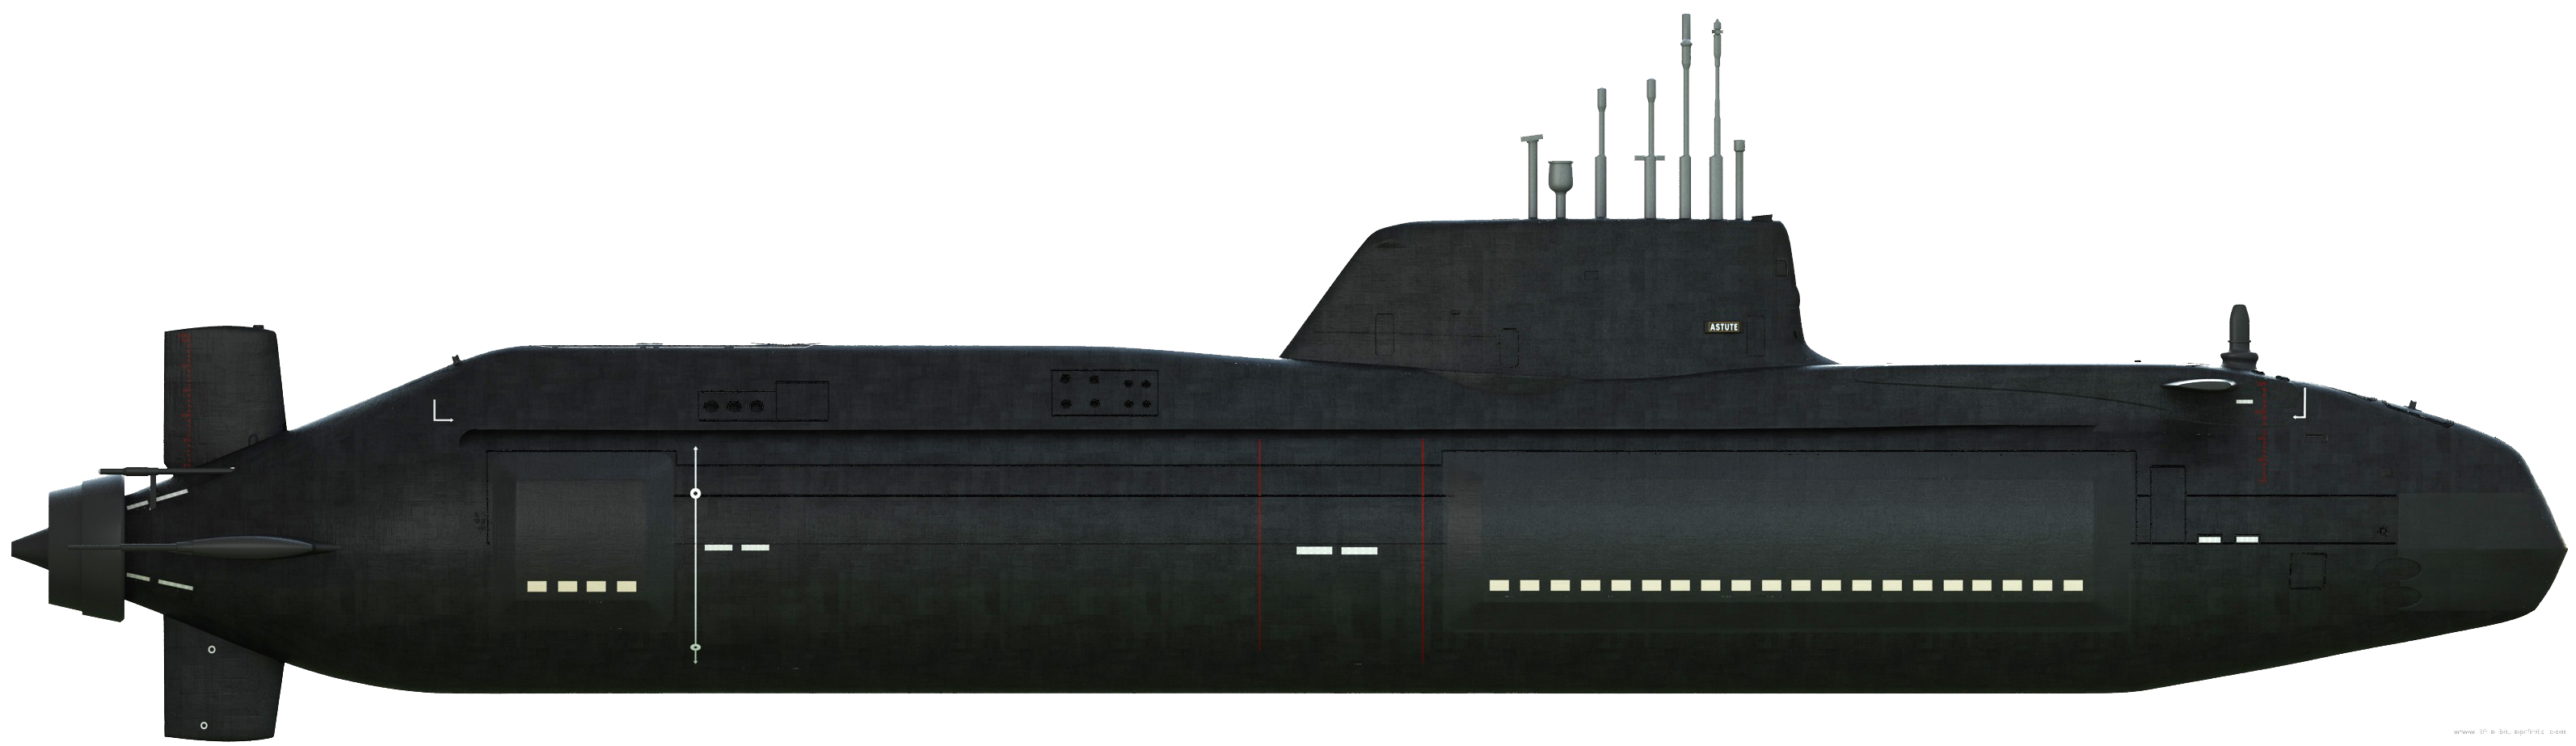 Imagens de submarino png